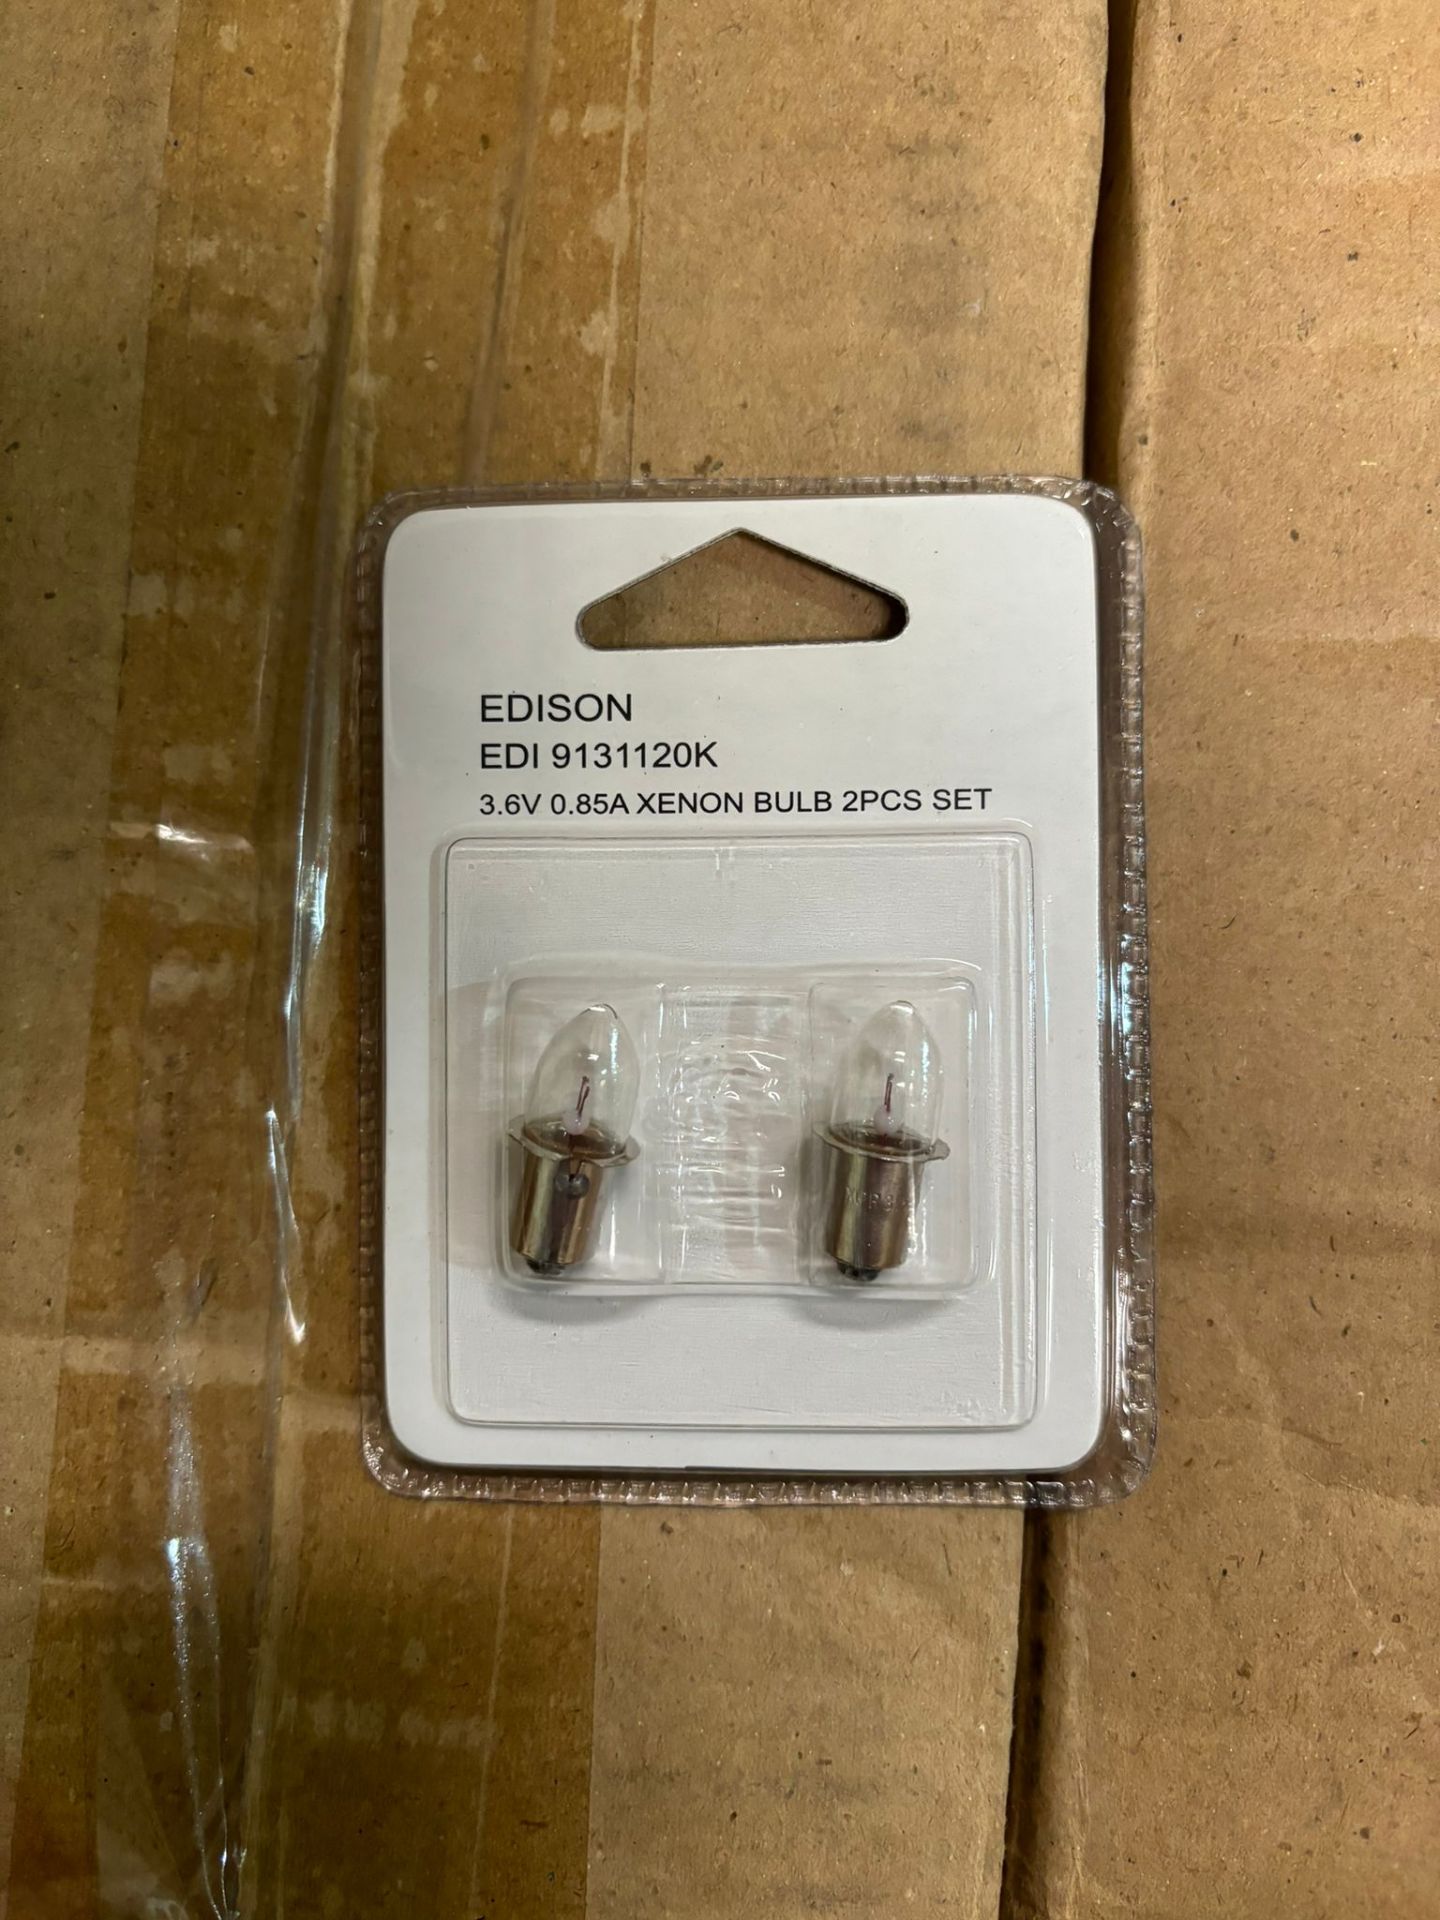 750x Edison EDI9311120K 3.6v 0.85A xenon light bulb 2pcs set